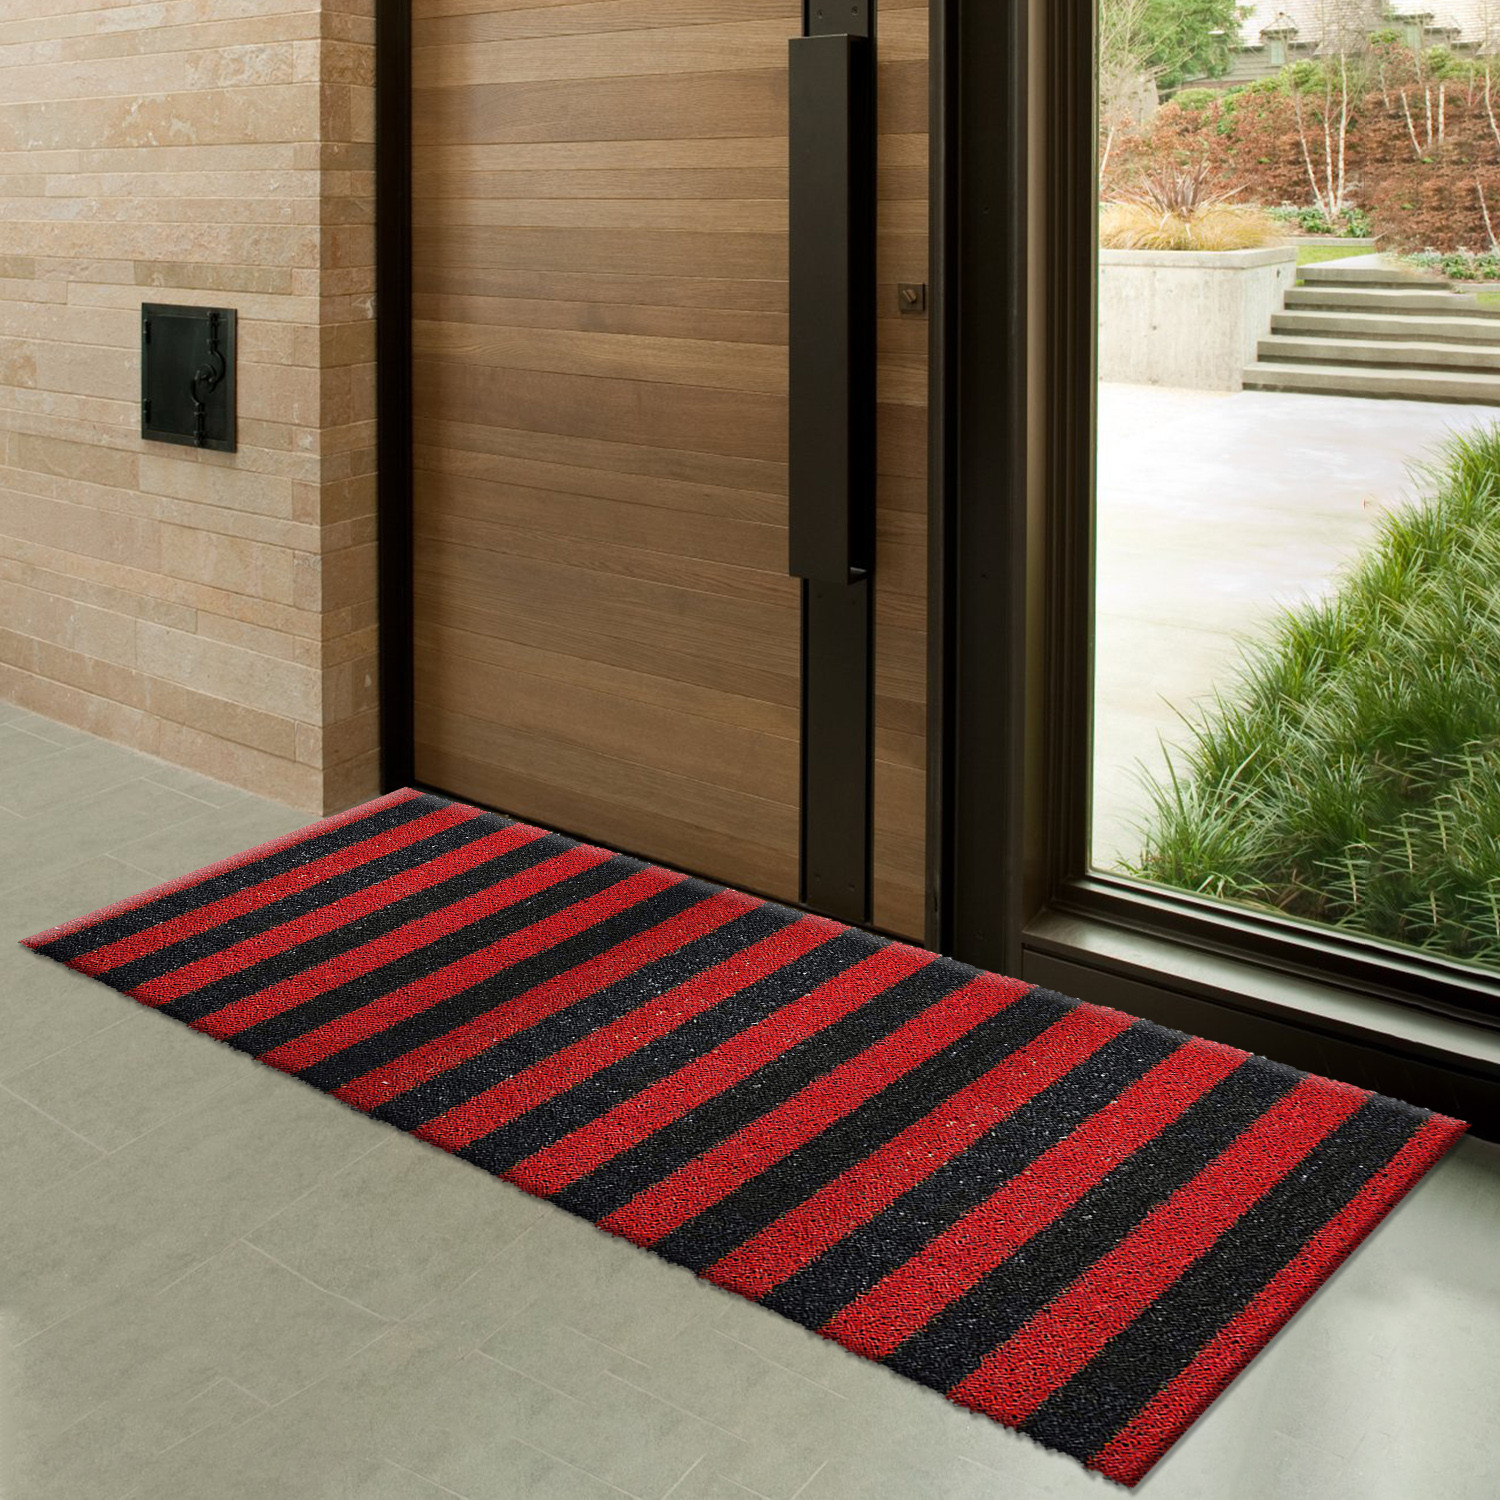 Kuber Industries Rubber Strips Design Door Mat For Porch/Kitchen/Bathroom/Laundry Room, 24